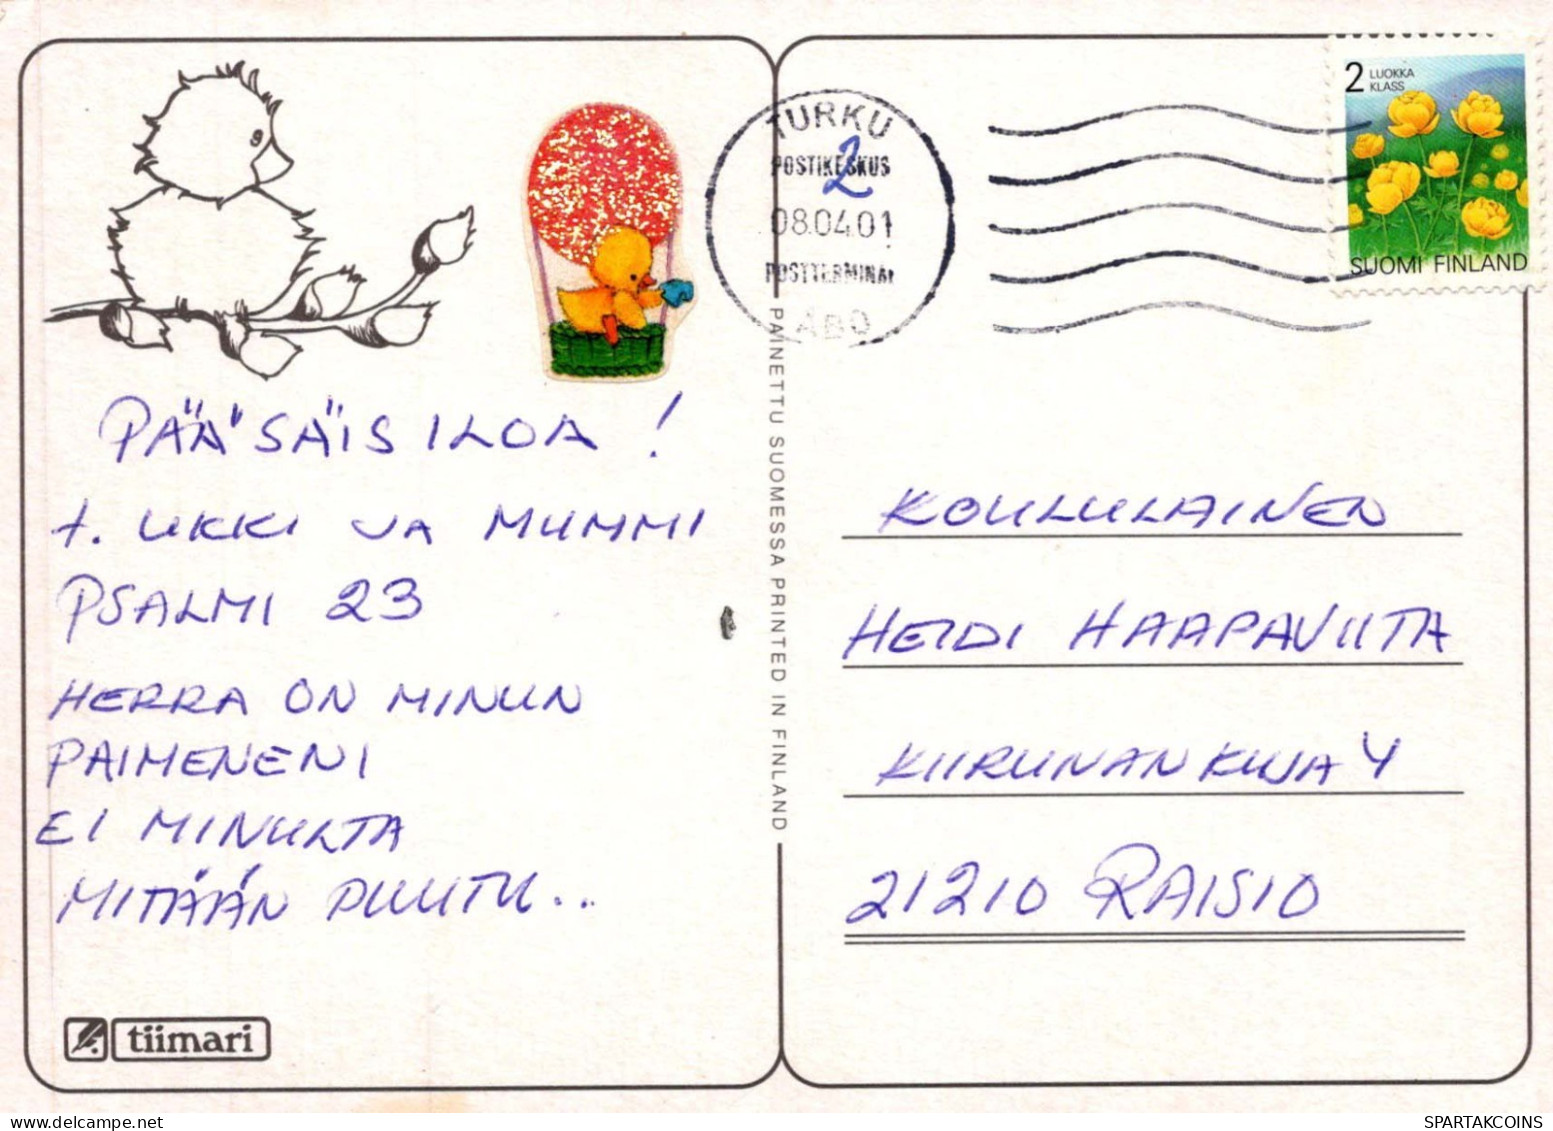 NIÑOS NIÑOS Escena S Paisajes Vintage Tarjeta Postal CPSM #PBT123.ES - Scenes & Landscapes